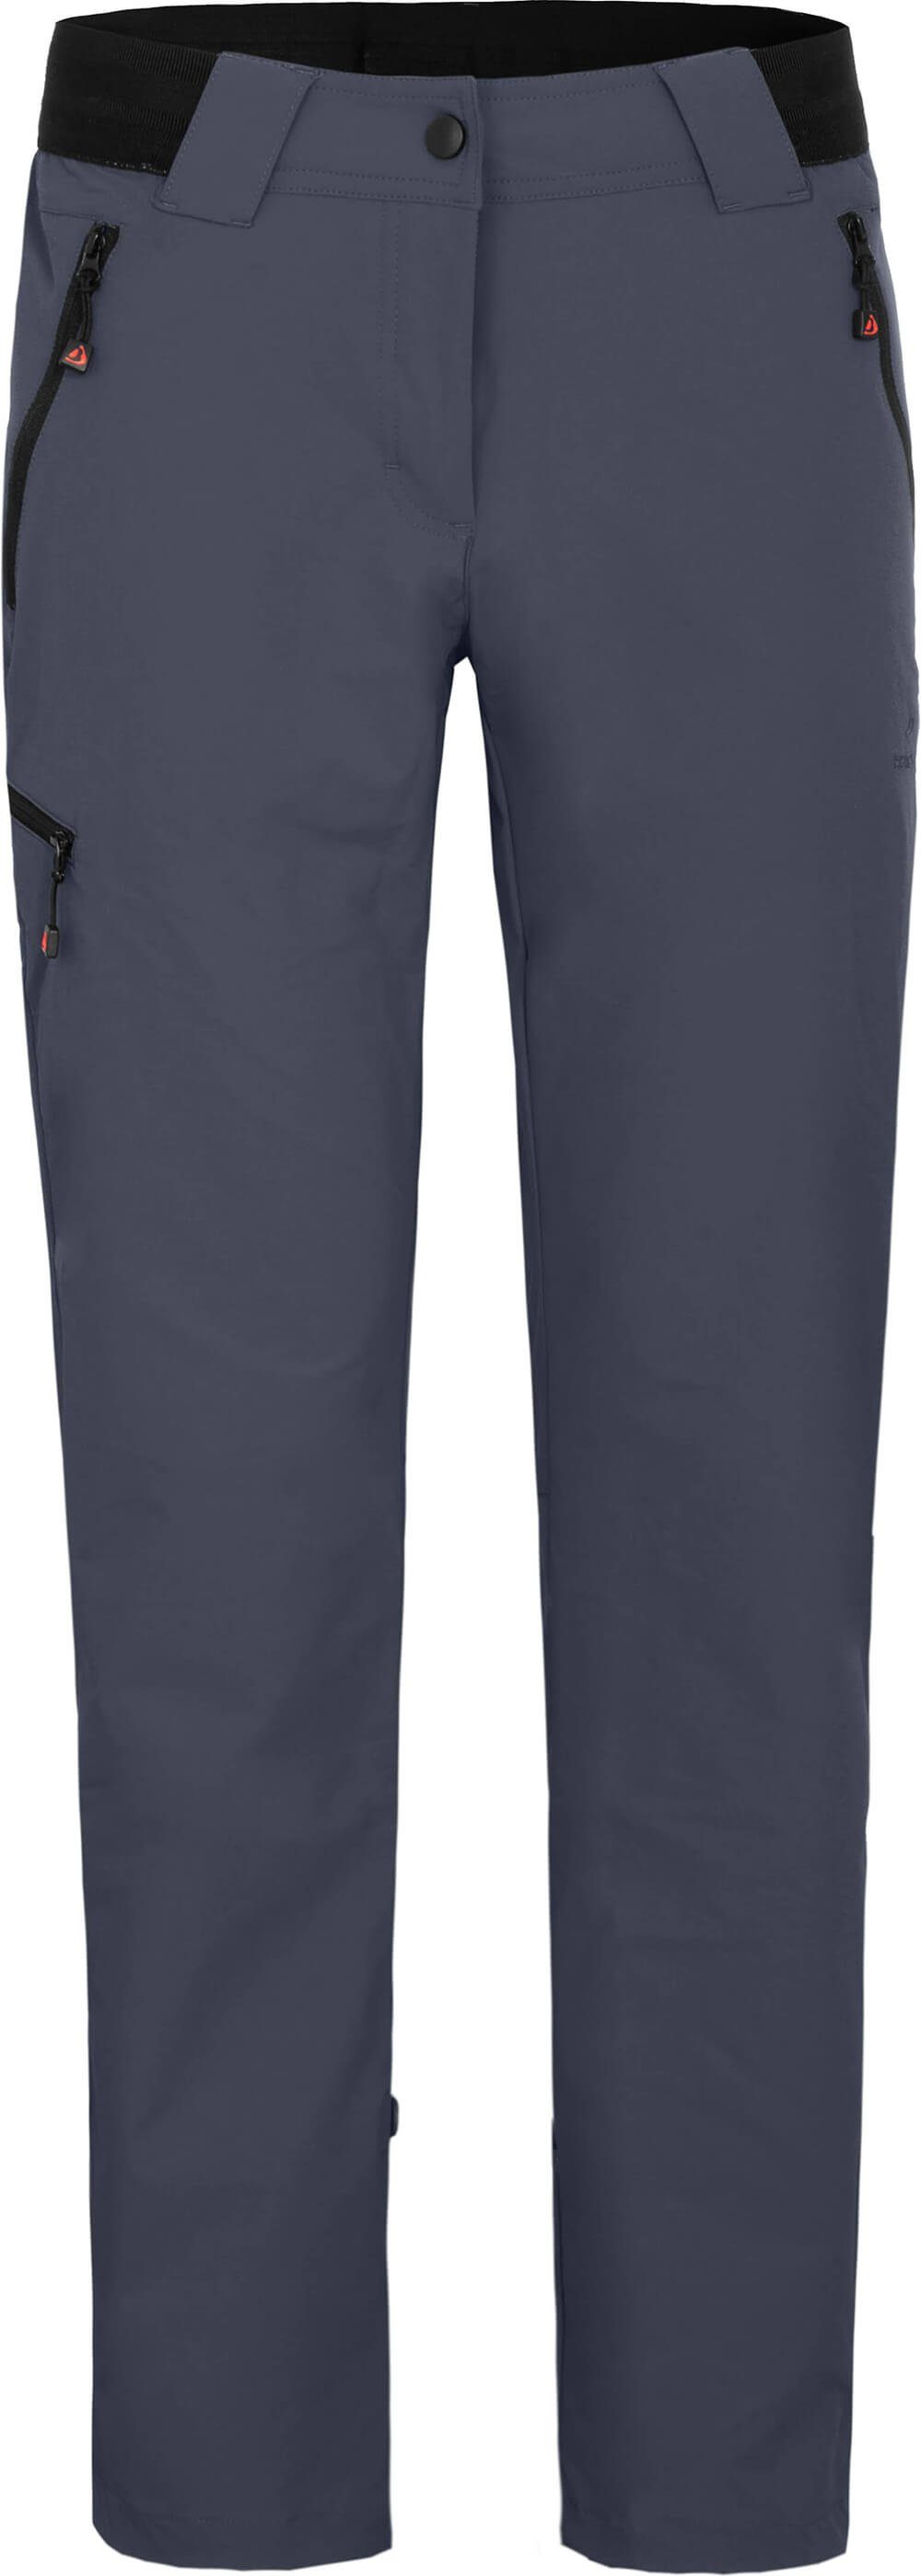 Bergson Outdoorhose VIDAA COMFORT Damen Wanderhose, leicht, strapazierfähig, Kurzgrößen, grau/blau